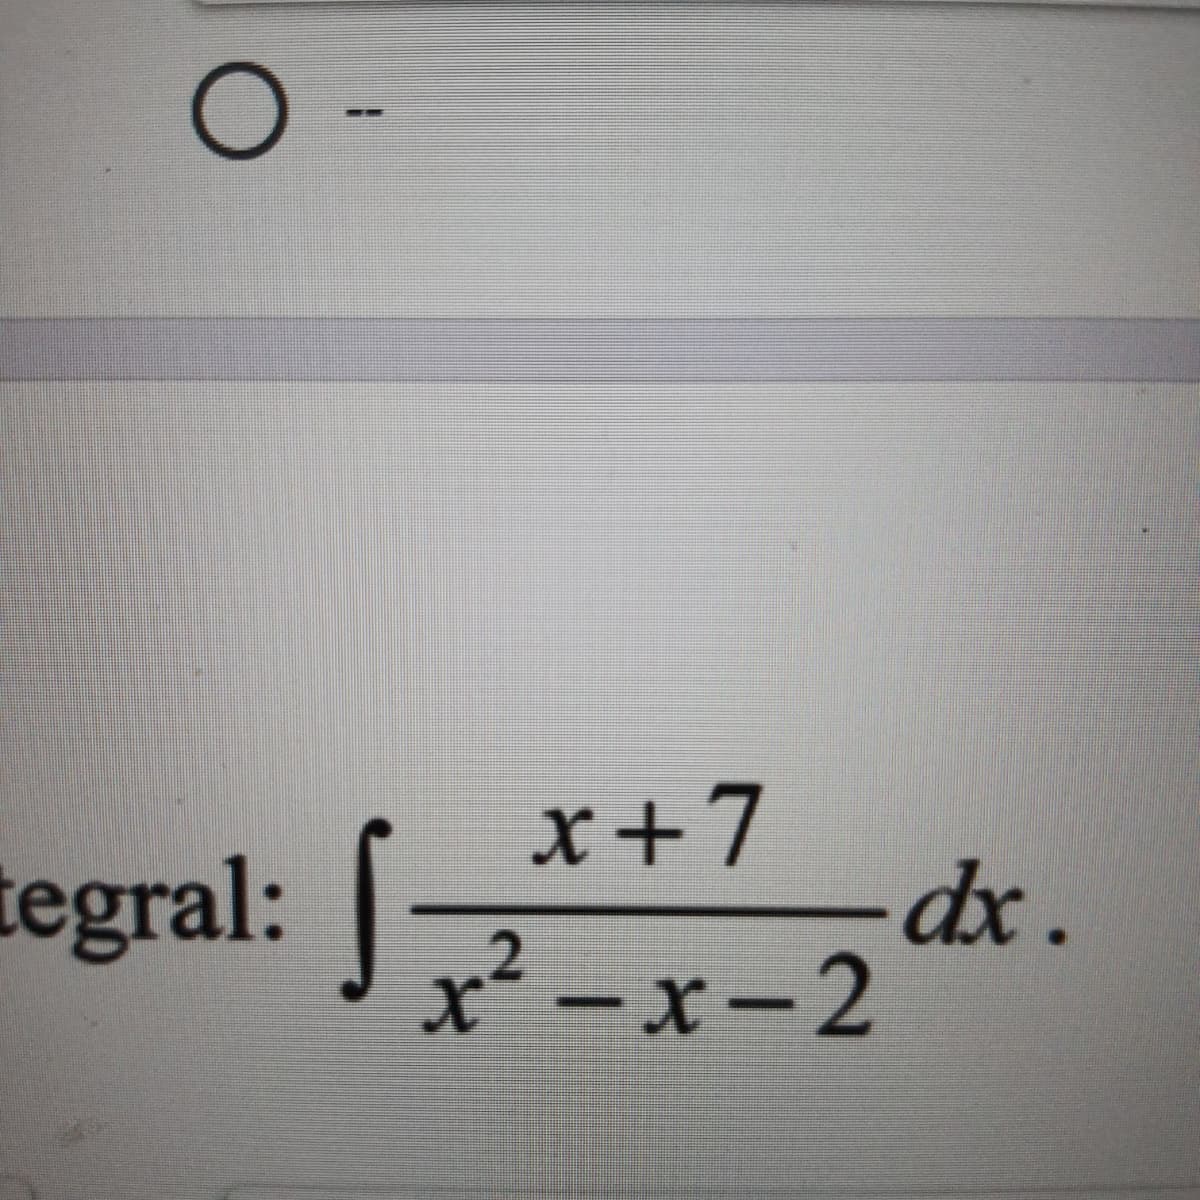 tegral: -x-2 t.
x+7
tegral:
x²
x-2
